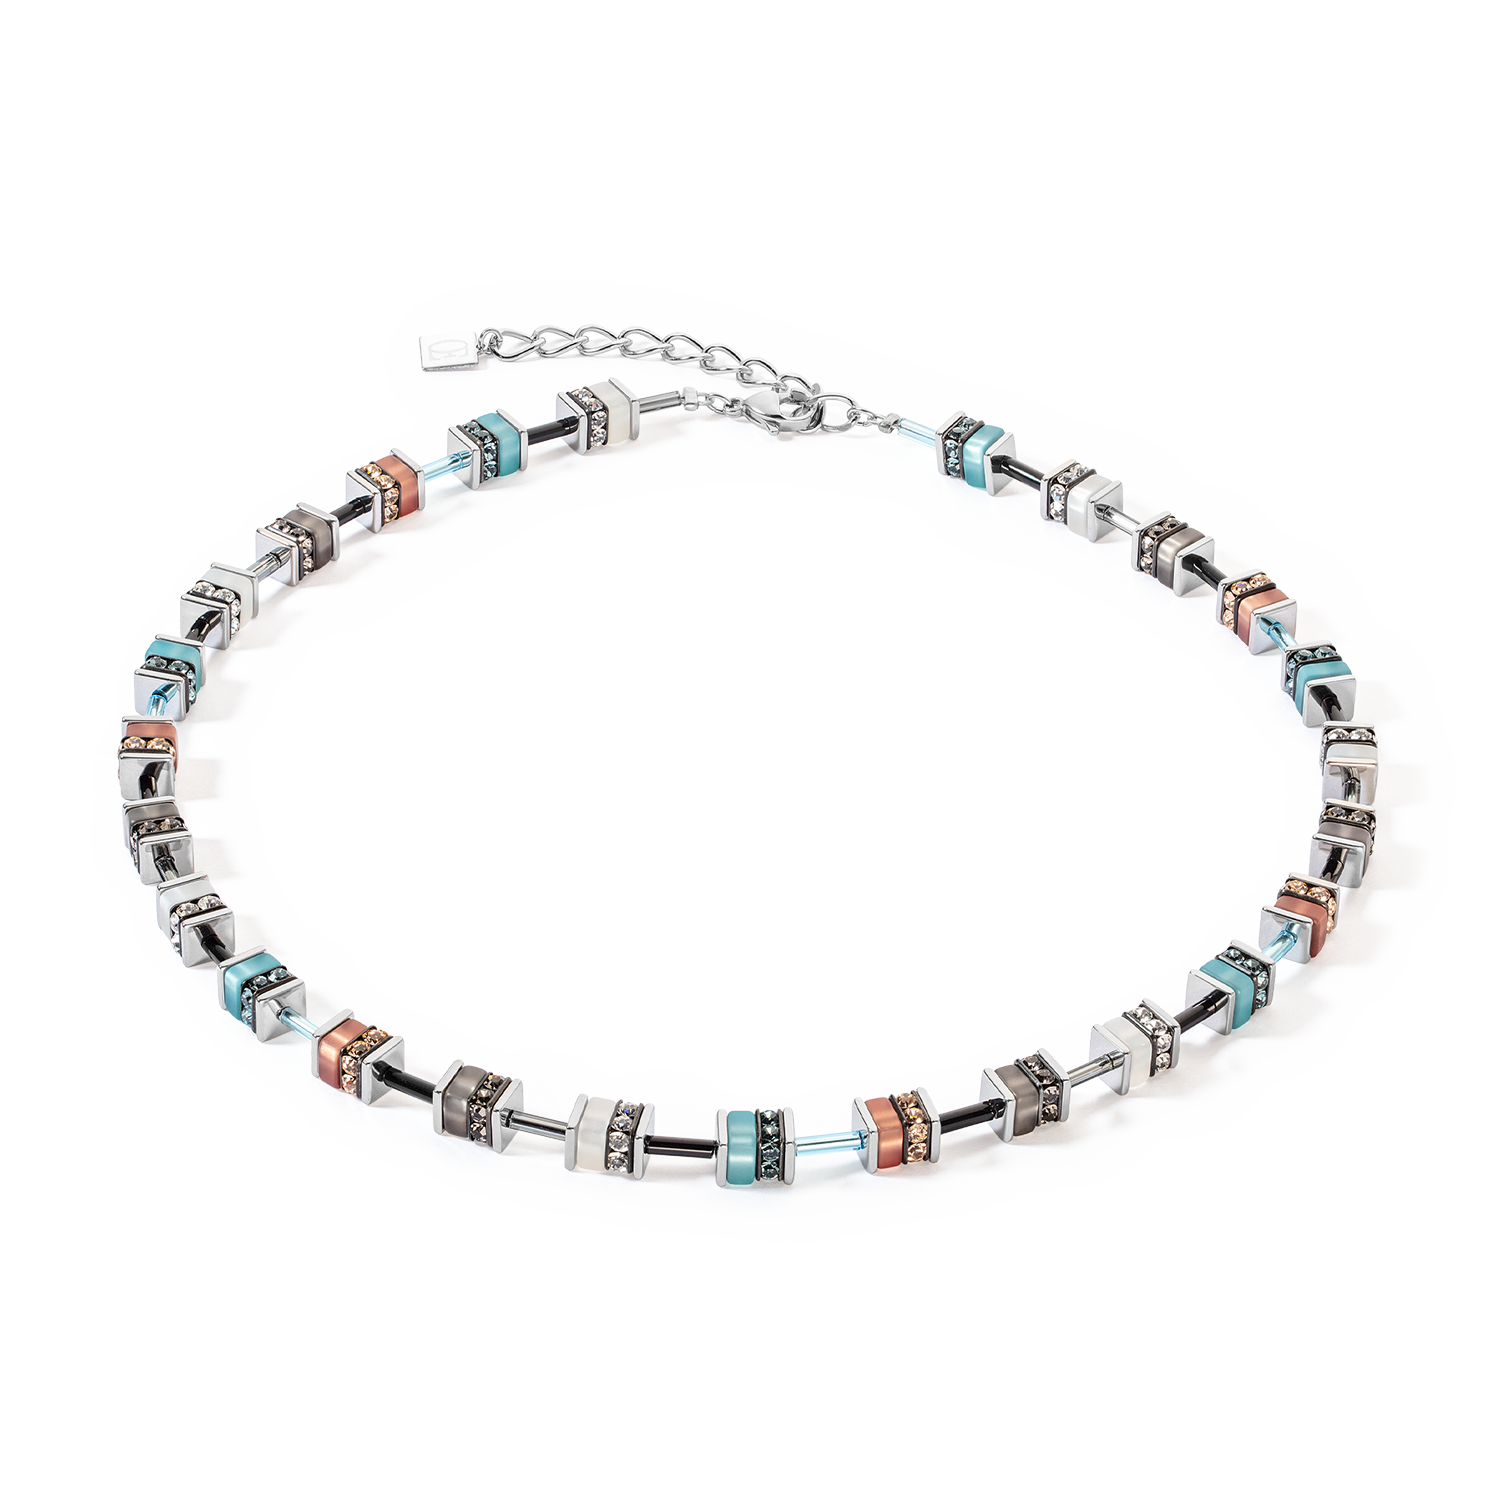 Kollektion 4409 – Aquabraun – Halskette – Löwenherz 